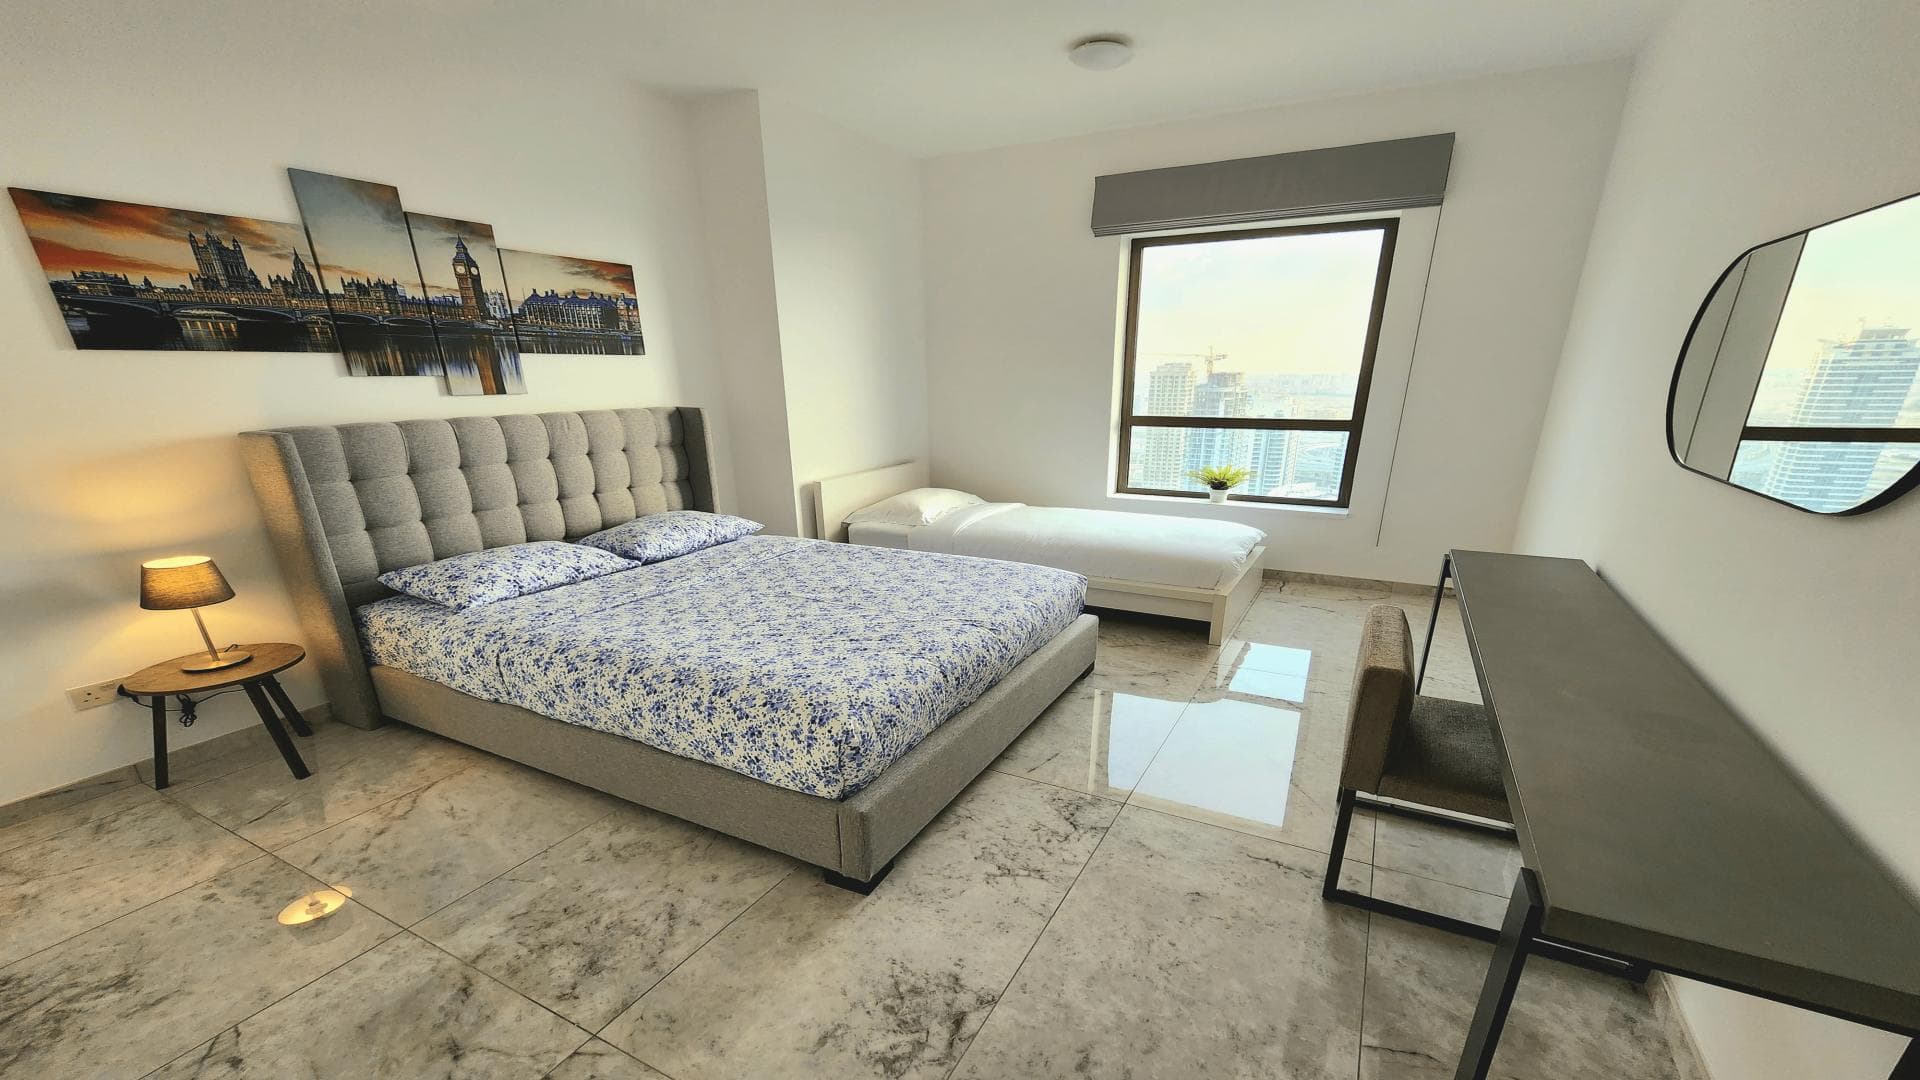 2 Bedroom Apartment For Rent Shams Lp32641 259acf0d1a819400.jpg